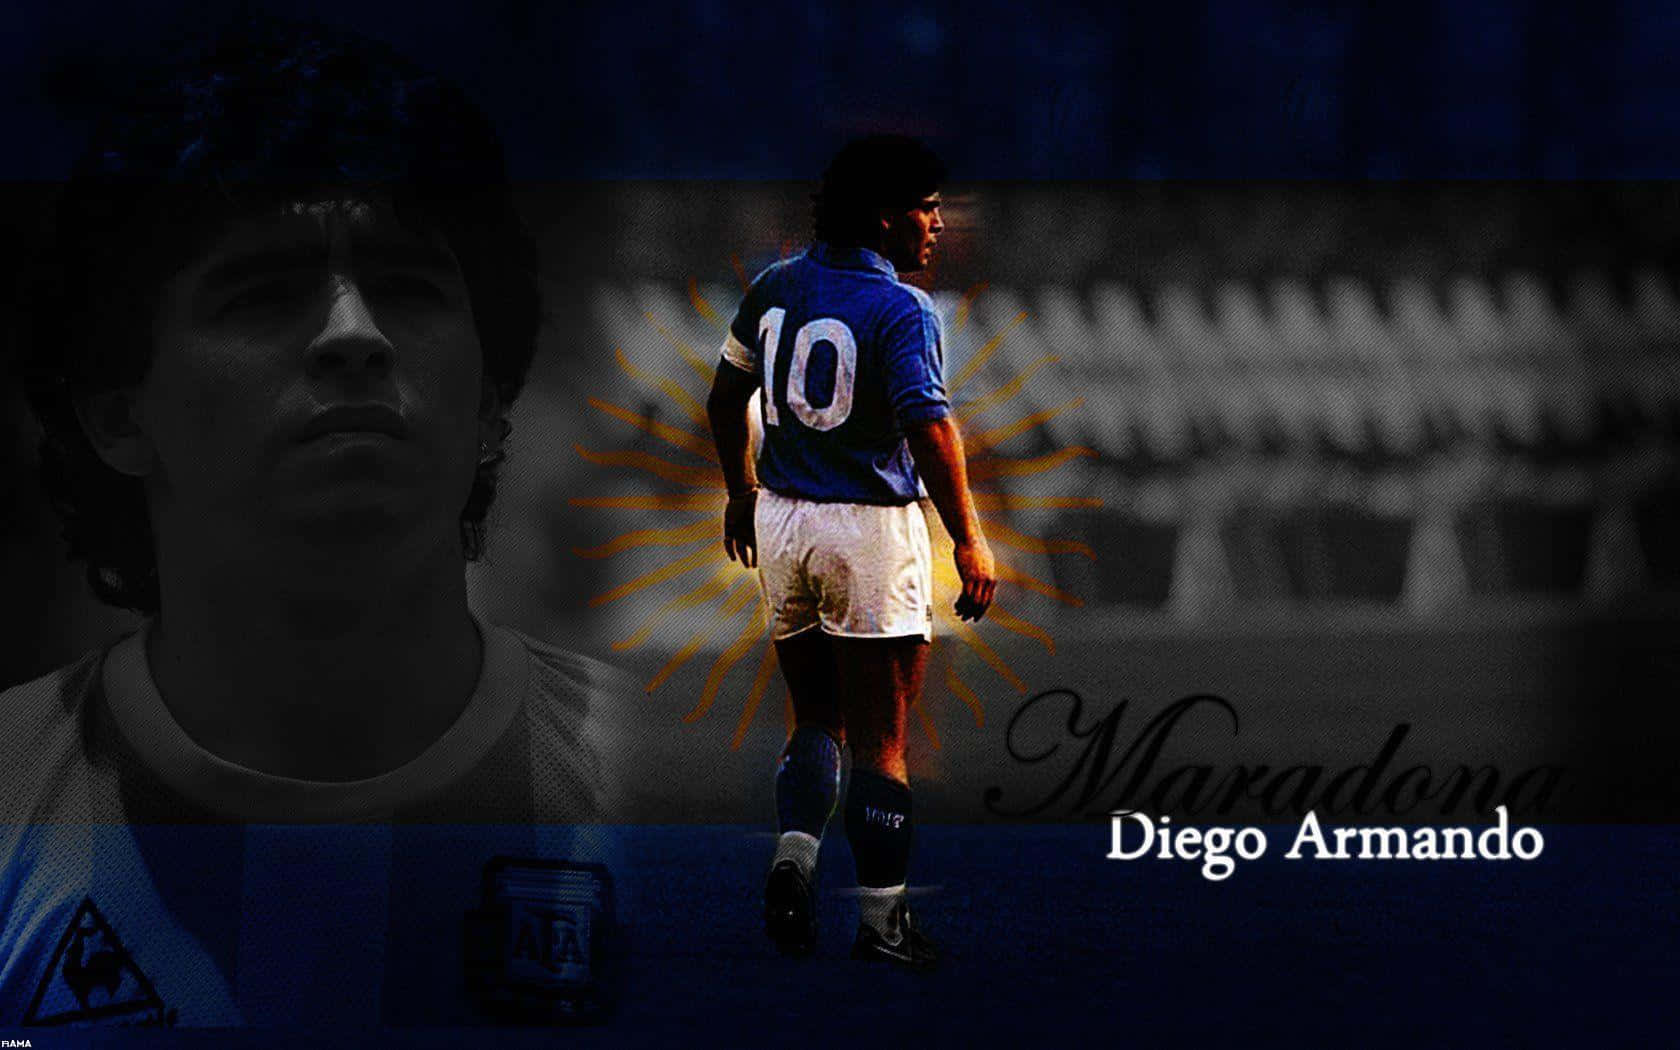 Diegomaradona Fotbollslegend Digital Foton Redigering Wallpaper